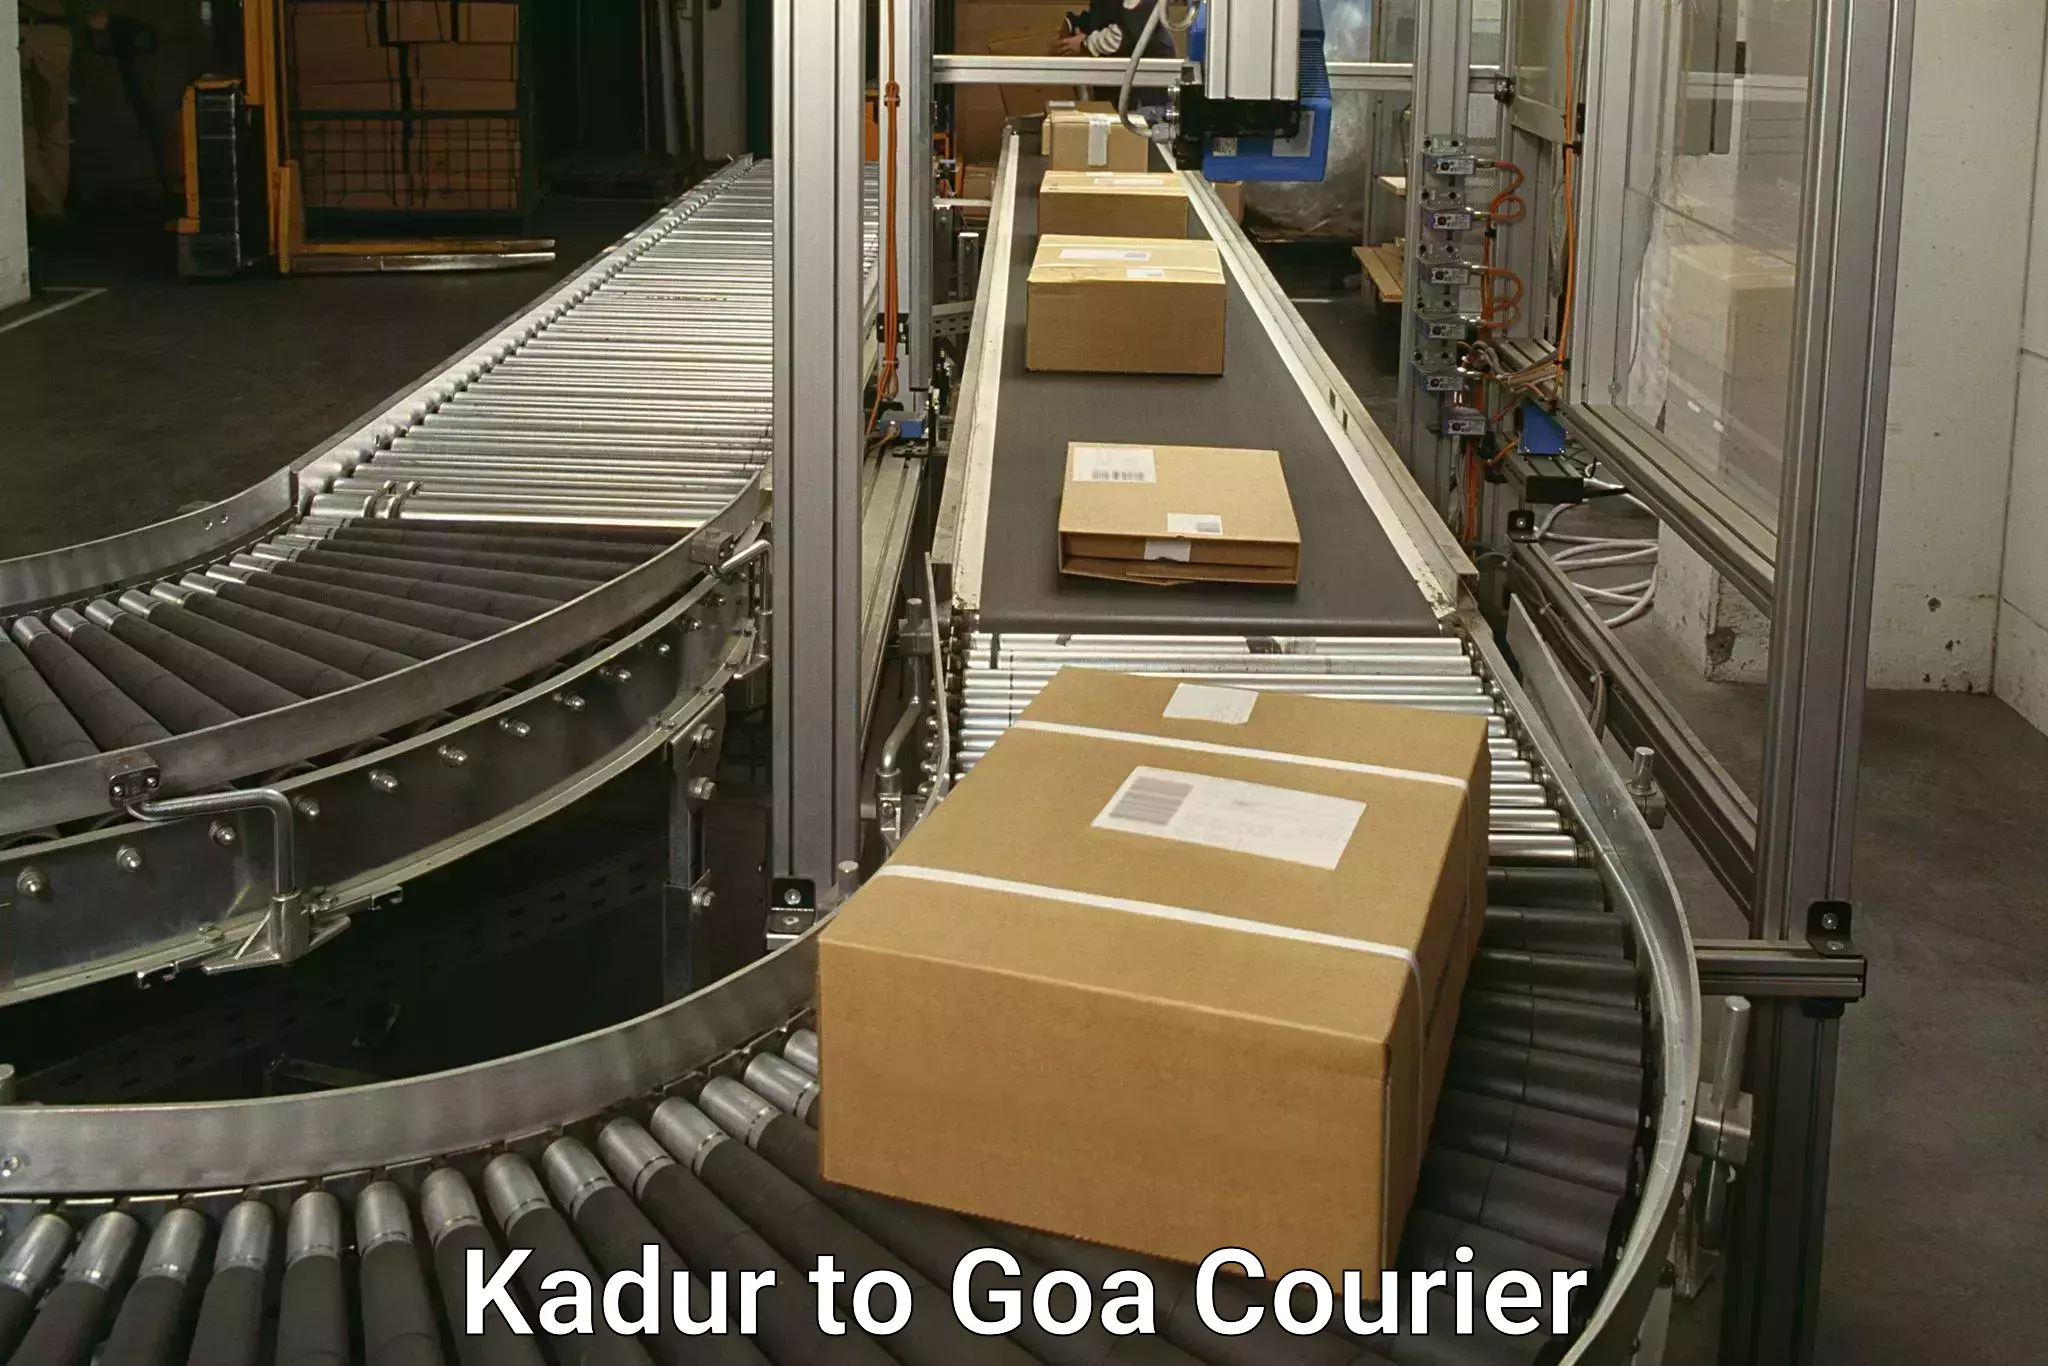 Express courier facilities in Kadur to Panaji